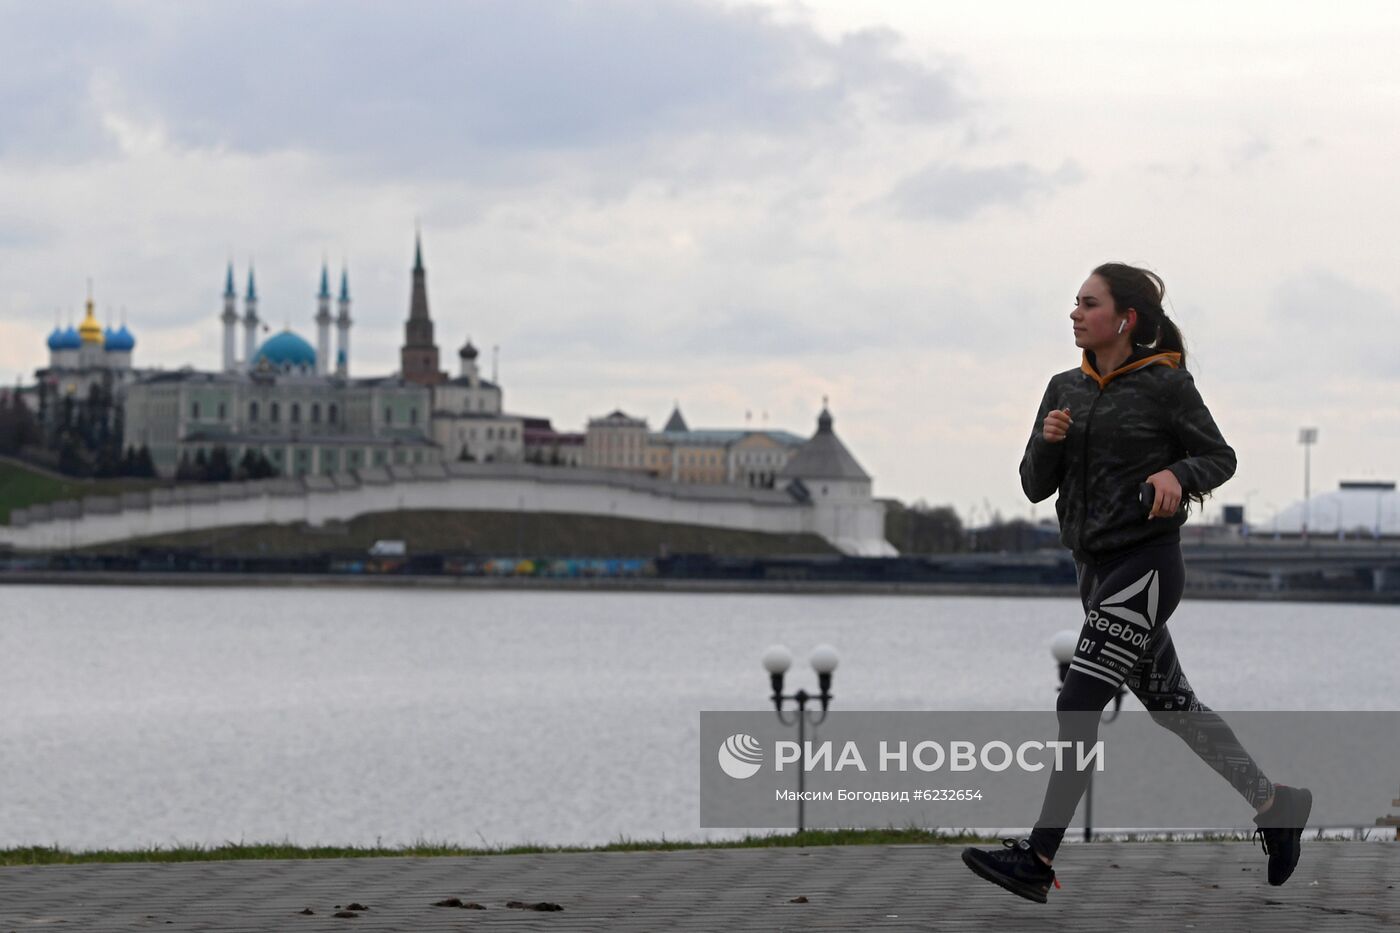 Жителям Татарстана разрешили пробежки во время самоизоляции